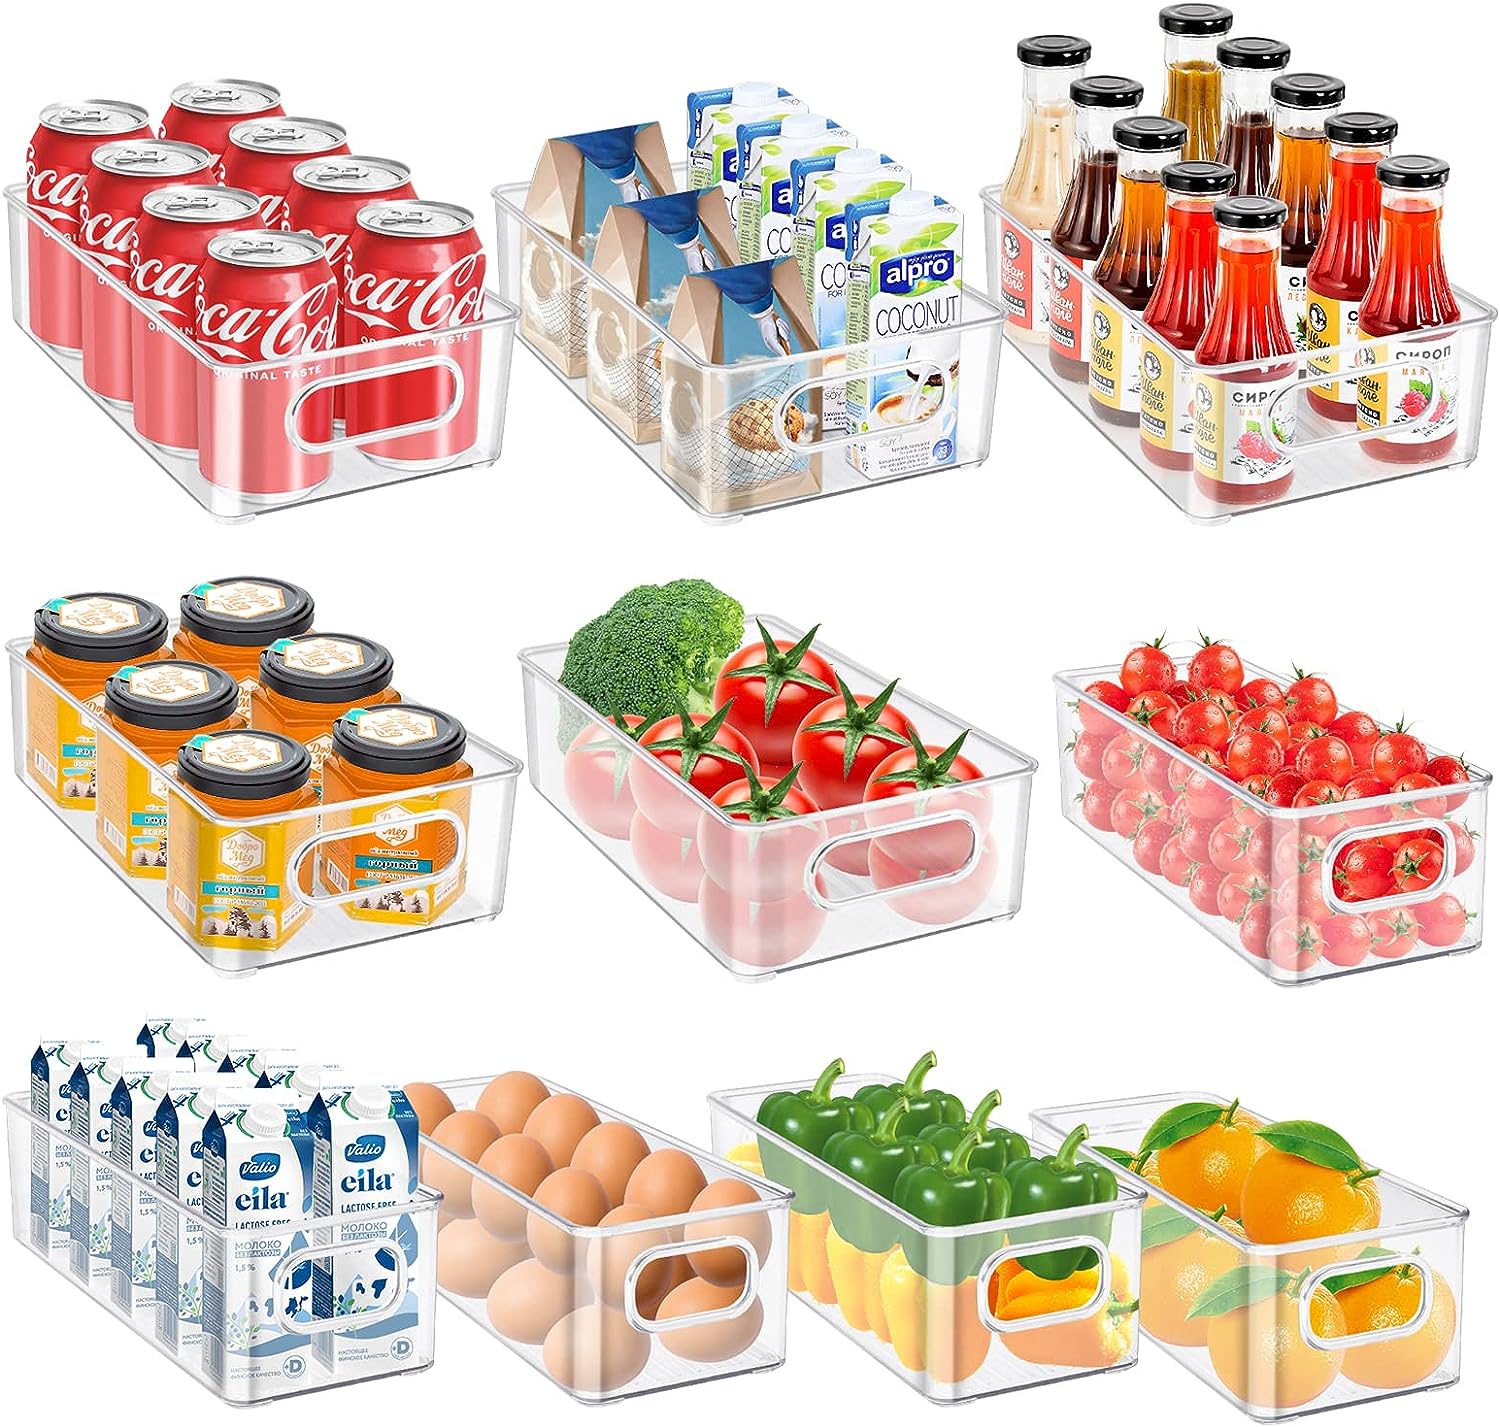 Tallgoo Kühlschrank Organizer Set,10er Set (2 Größe) Kühlschrank Organizer für Küche,Speisekammer,Schränke,Regale,Schublade,Badezimmer-BPA Frei